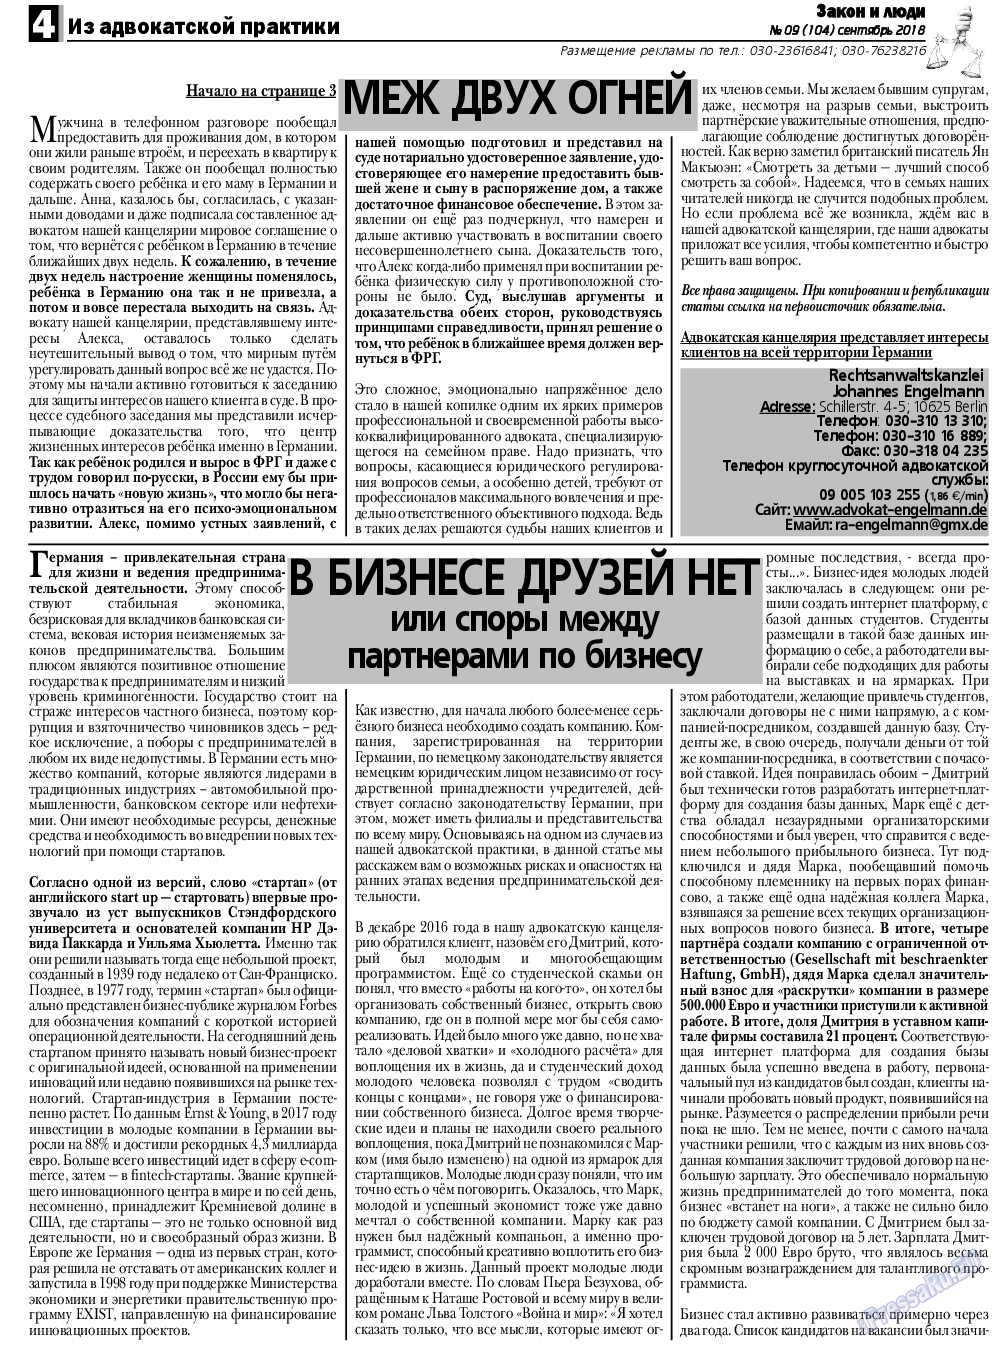 Закон и люди, газета. 2018 №9 стр.4